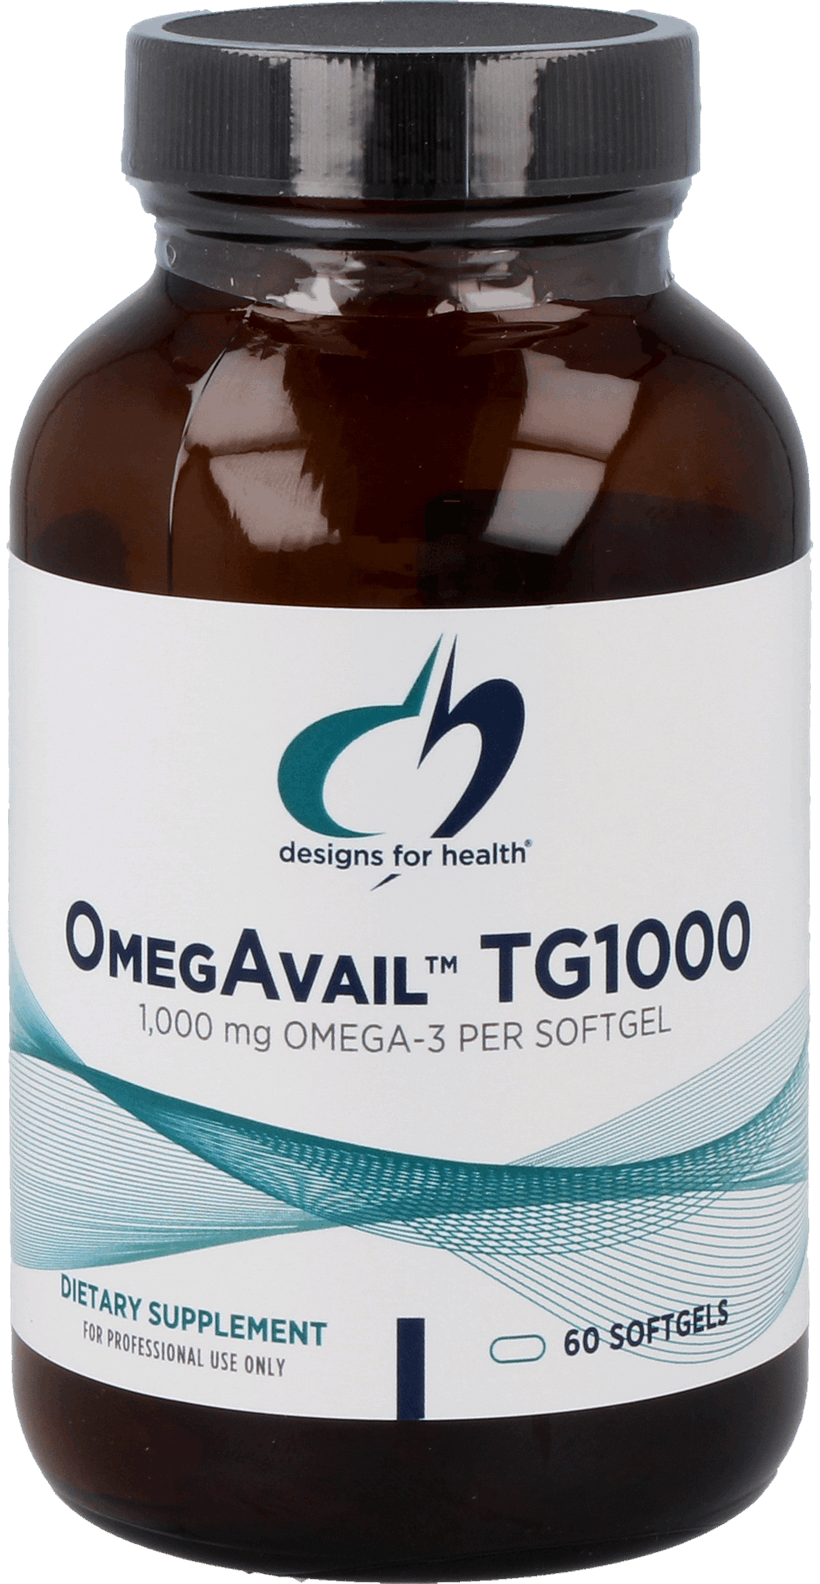 OmegAvail™ TG1000 